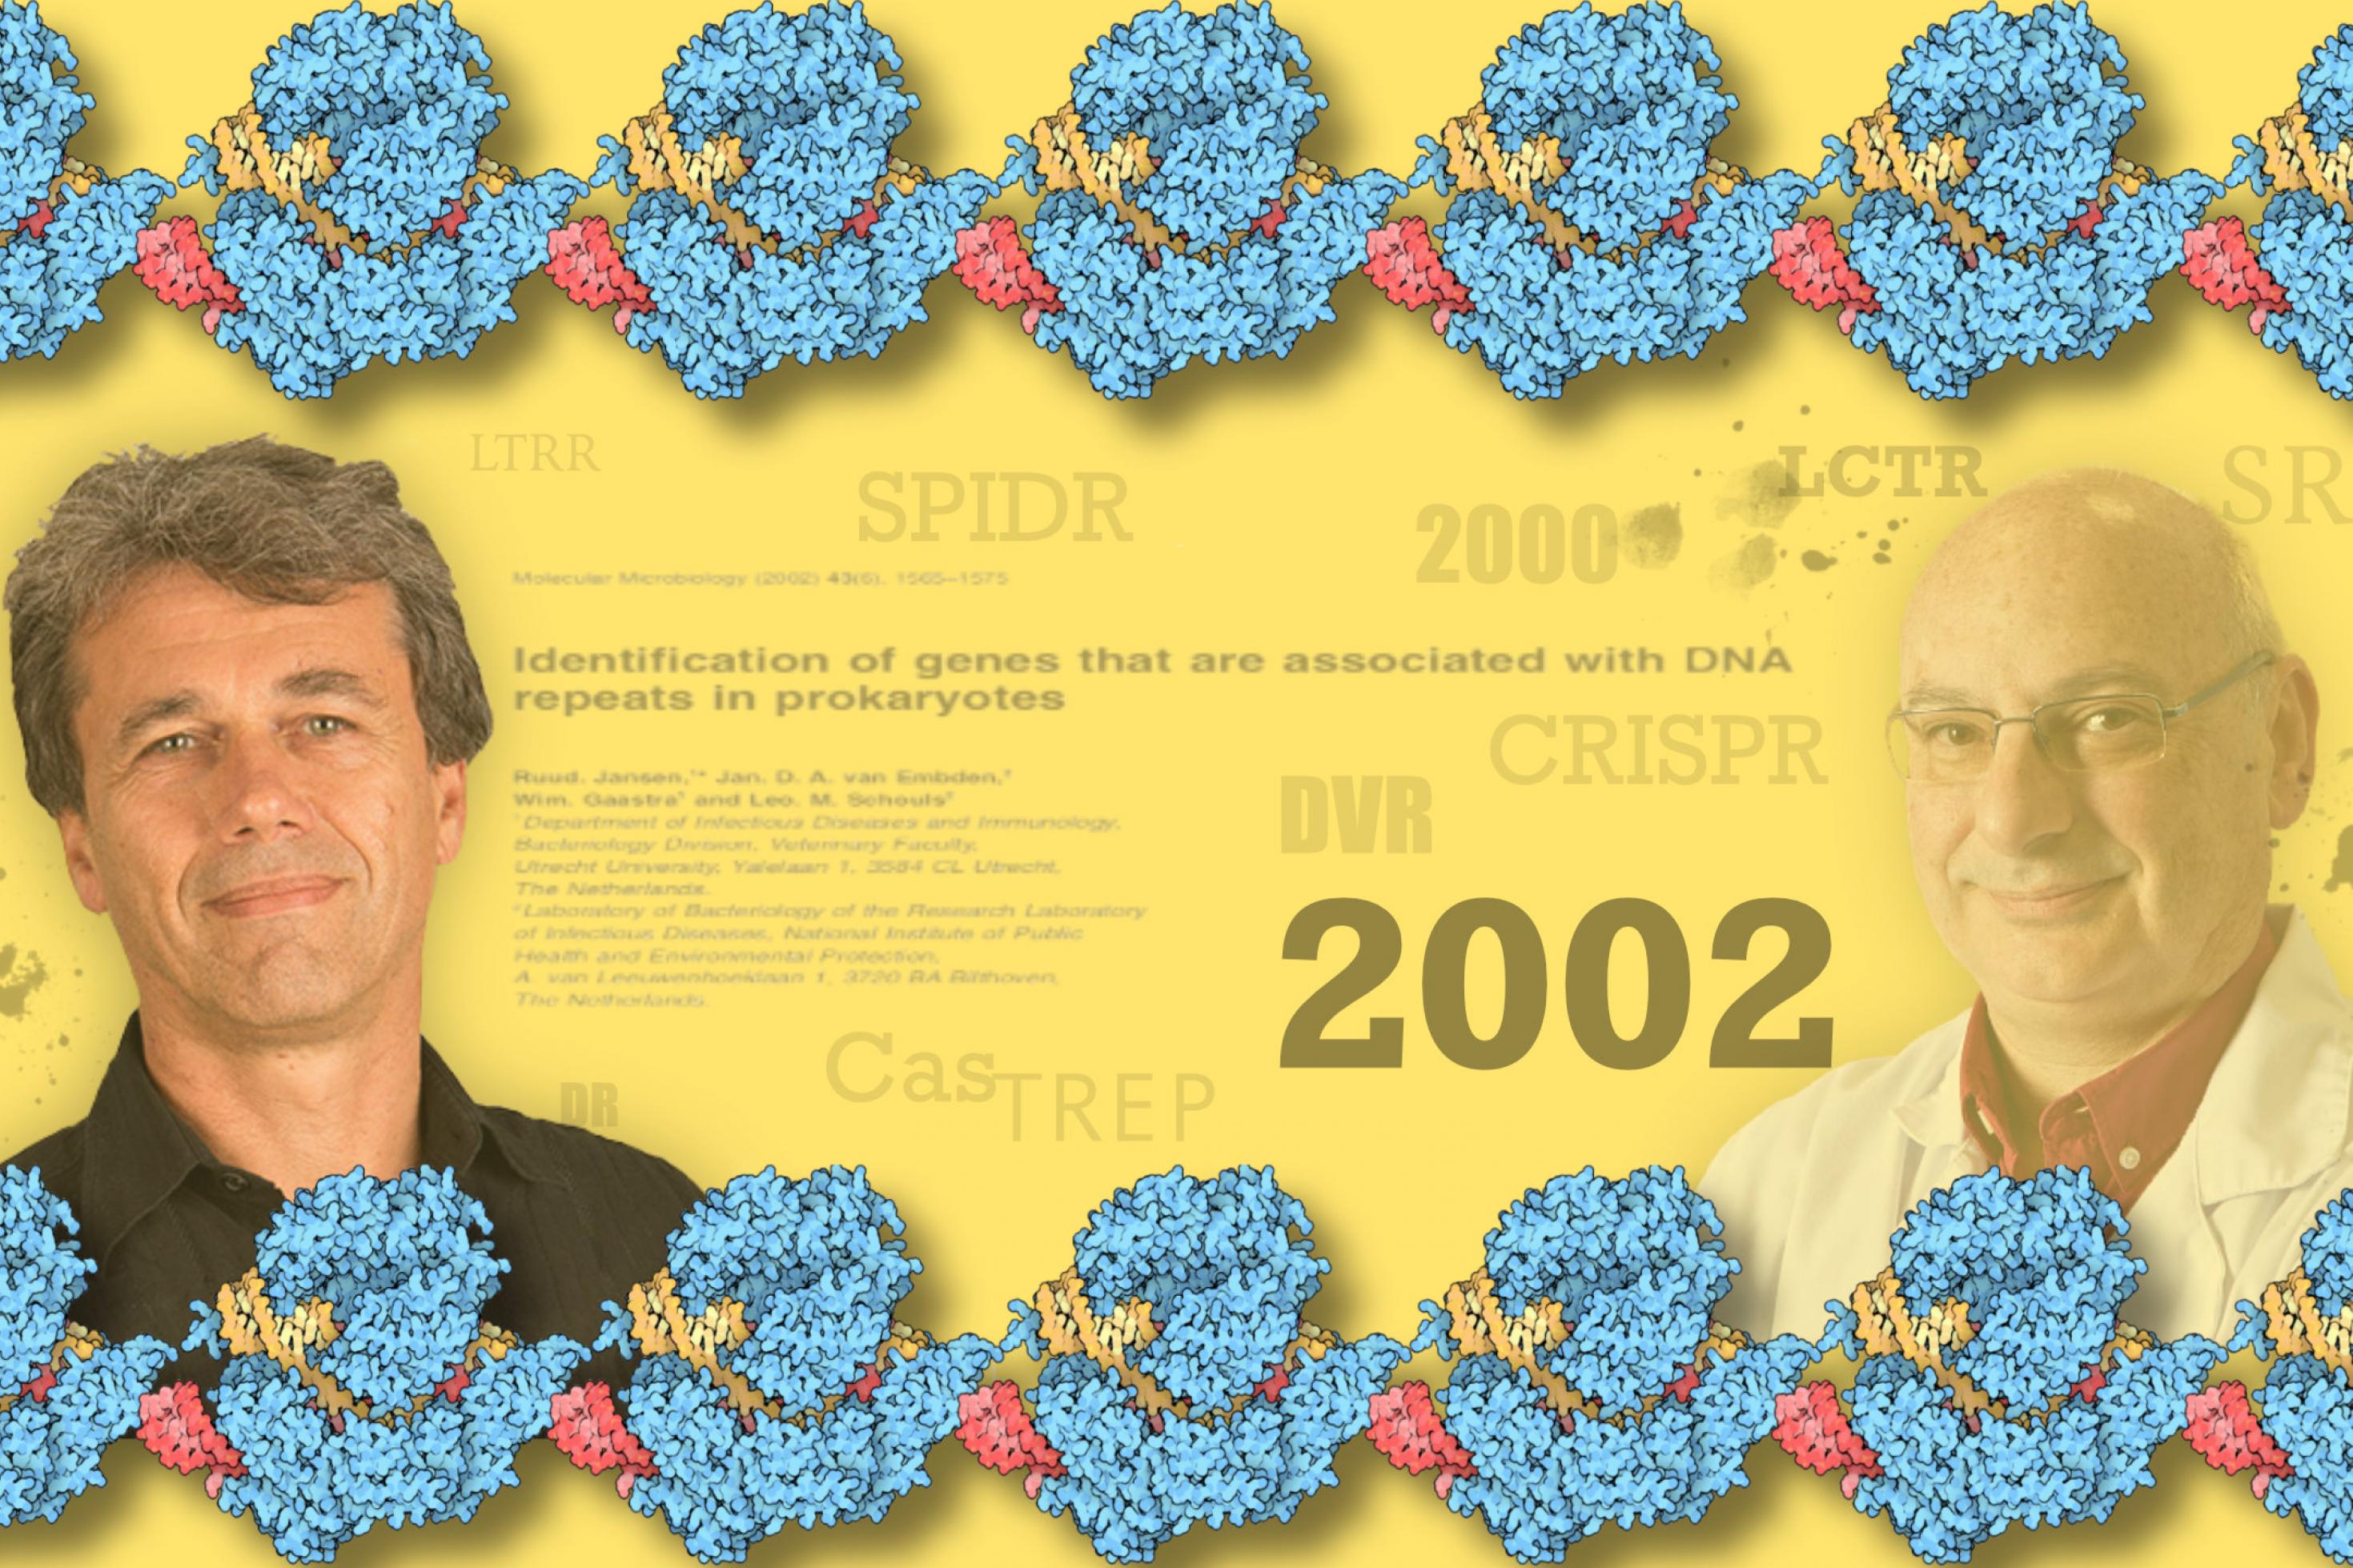 Portraits von Ruud Jansen (links) und Francisco Mojica (rechts) vor dem Titel des Artikels, in dem der Name CRISPR/Cas erstmals benutzt wurde, umgeben von vielen verschiedenen Abkürzungen, die vor CRISPR verwendet wurden, der Zahl 2002,dem Jahr in dem der Artikel erschien, umrandet von Grafiken des Cas9 Moleküls.